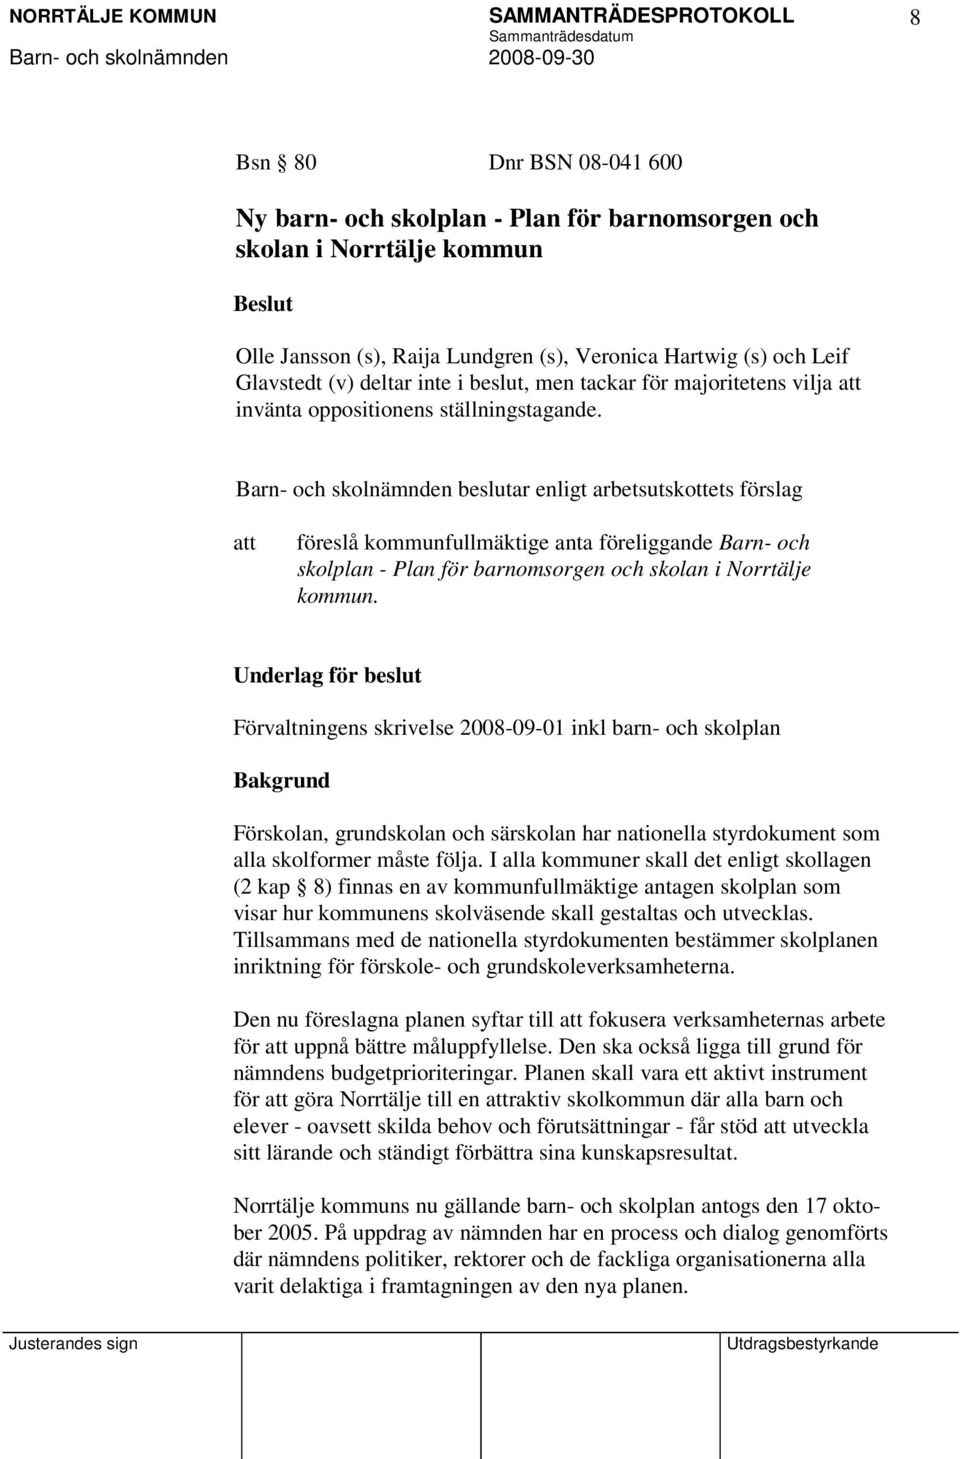 Barn- och skolnämnden beslutar enligt arbetsutskottets förslag föreslå kommunfullmäktige anta föreliggande Barn- och skolplan - Plan för barnomsorgen och skolan i Norrtälje kommun.